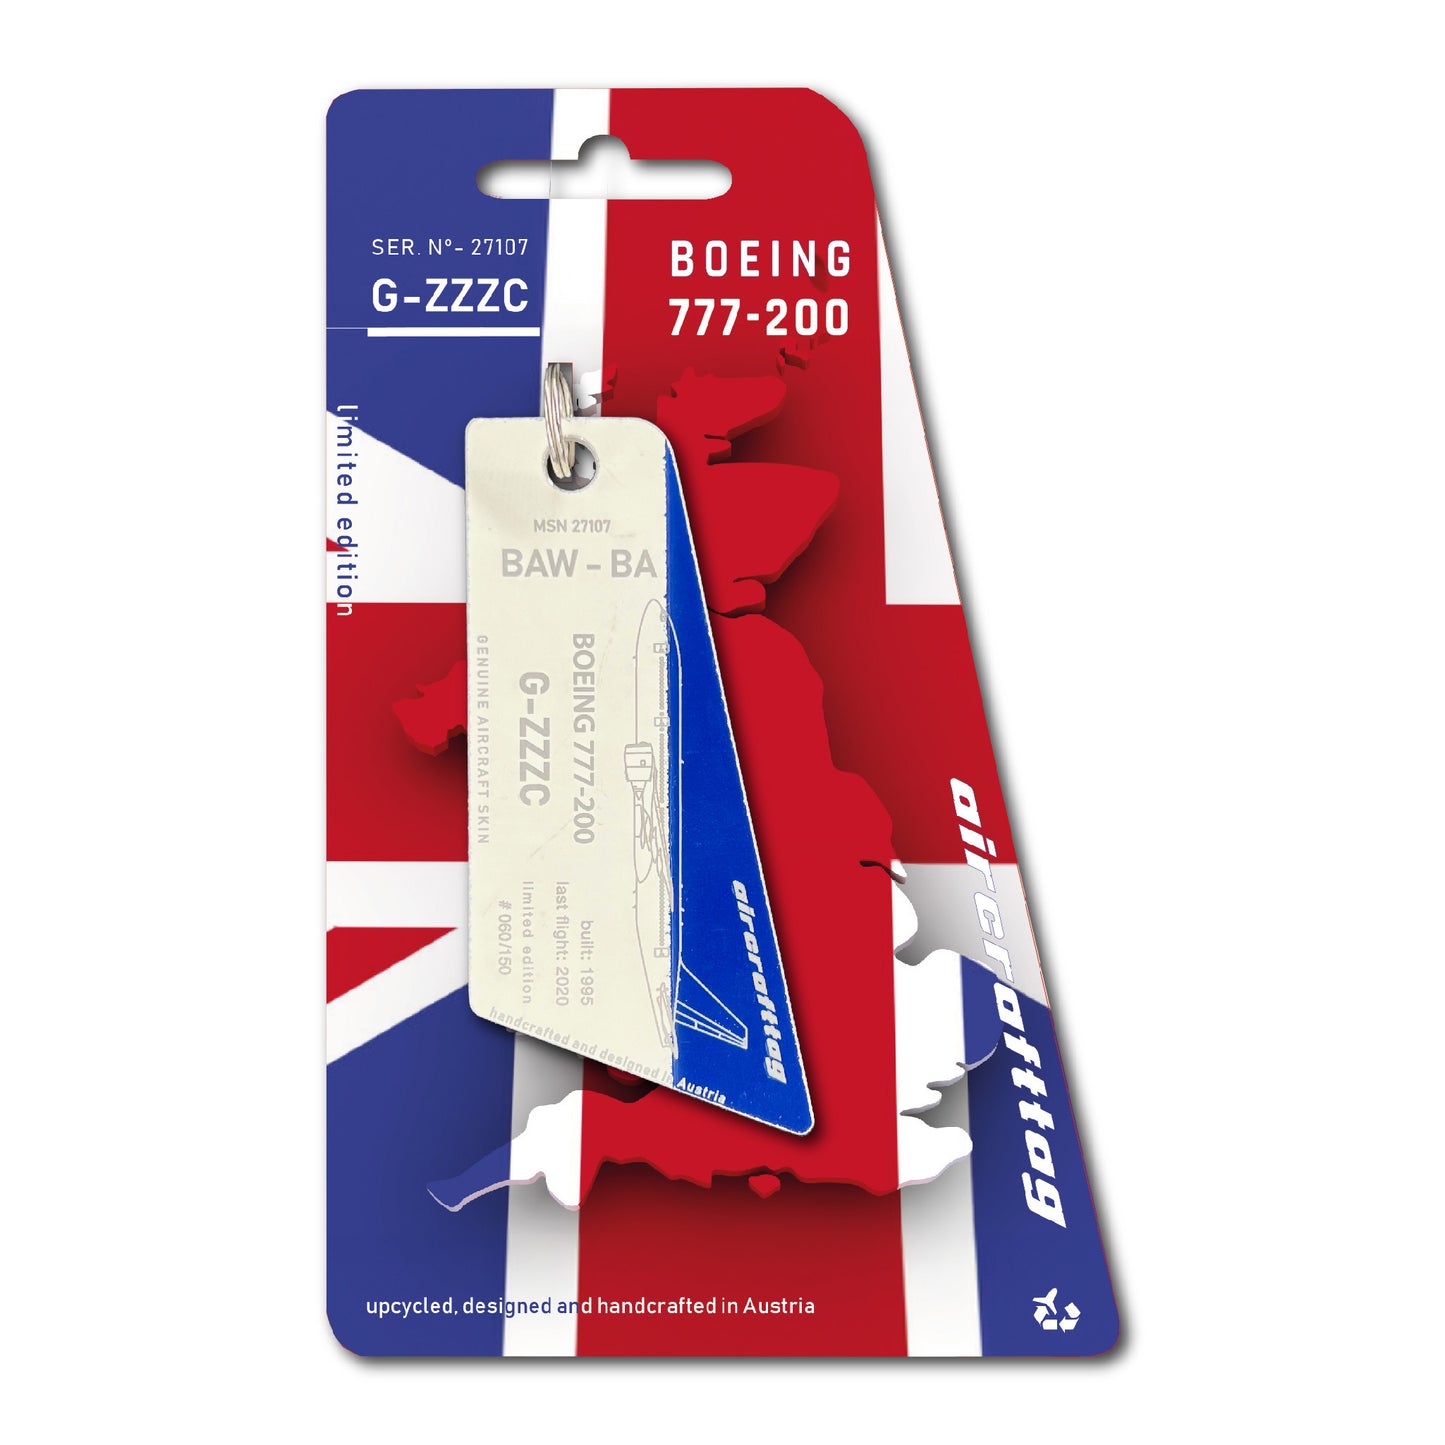 Boeing 777-200 - British Airways - G-ZZZC